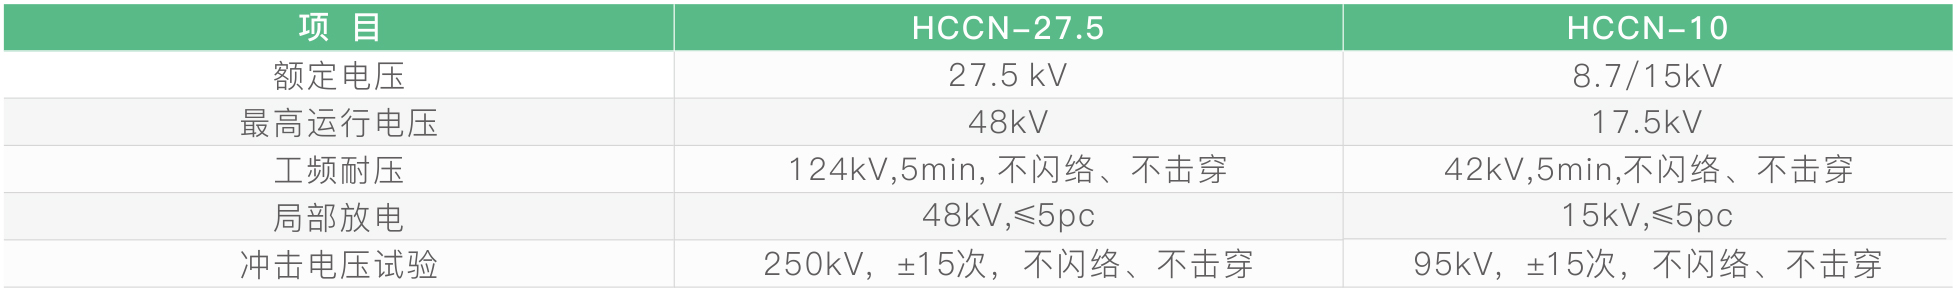 HCCN-35 测试终端-04